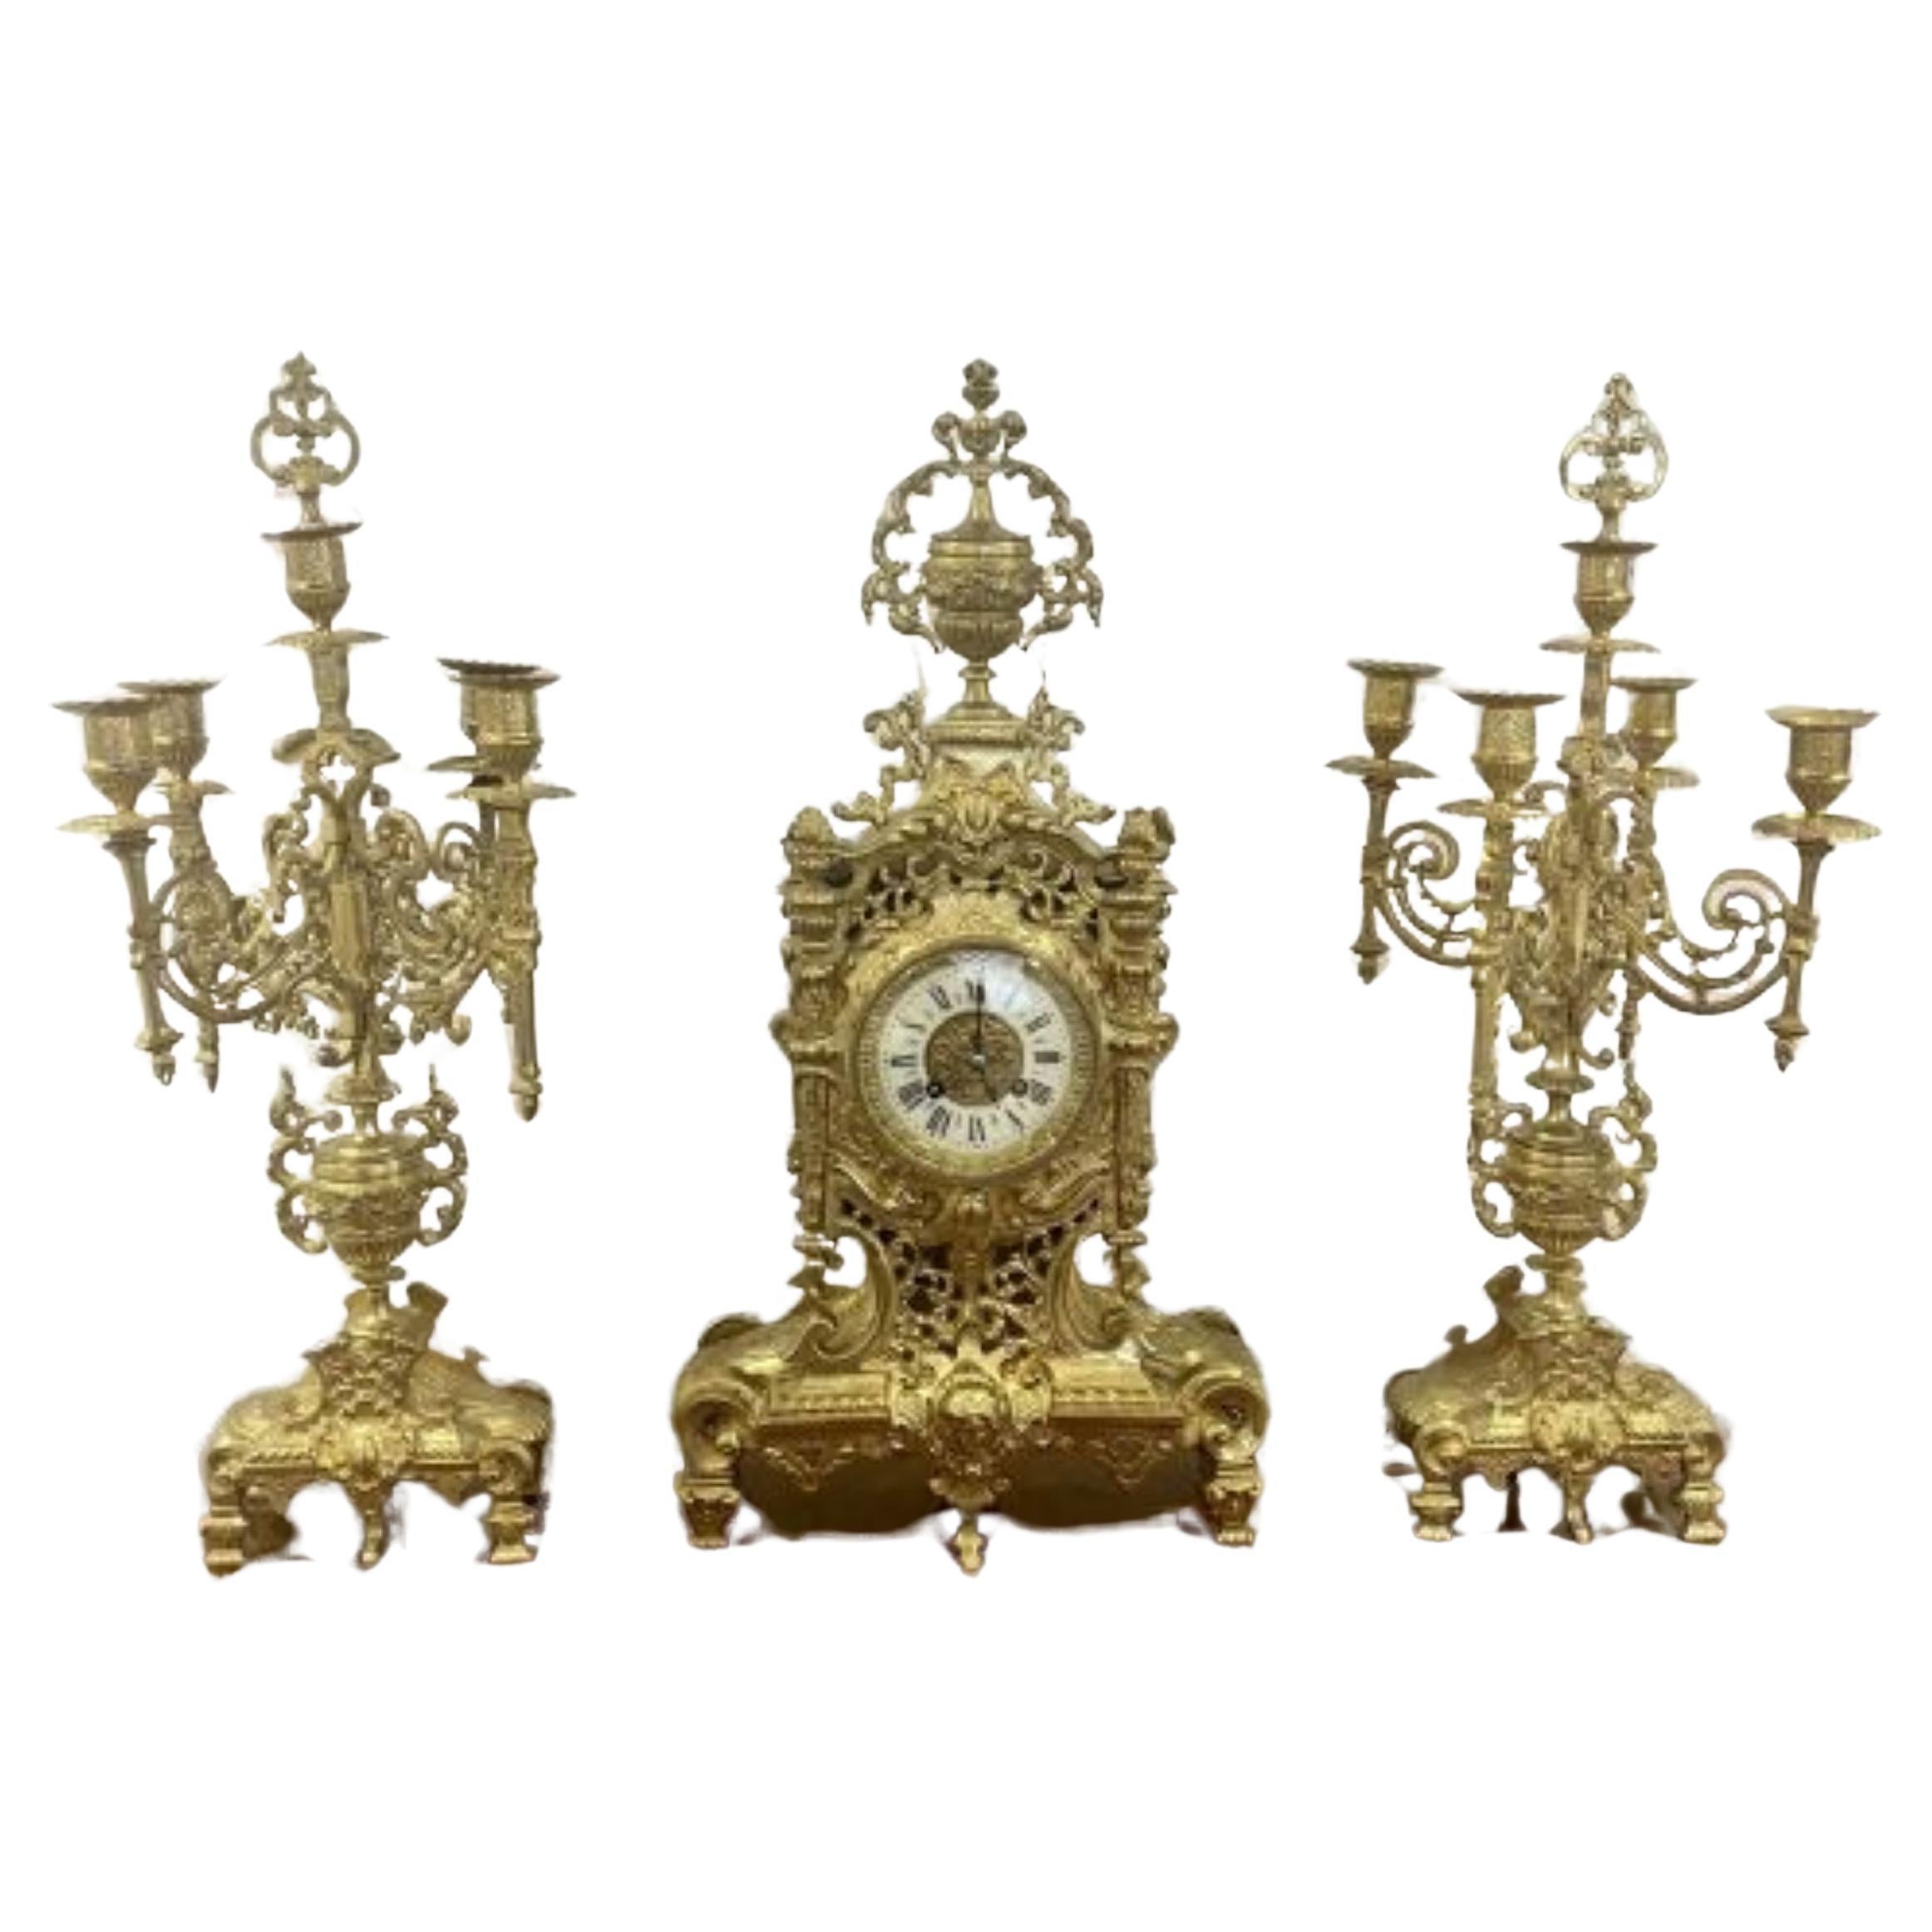 Atemberaubende Qualität Französisch antiken viktorianischen verziert Messing Uhr Garnitur 